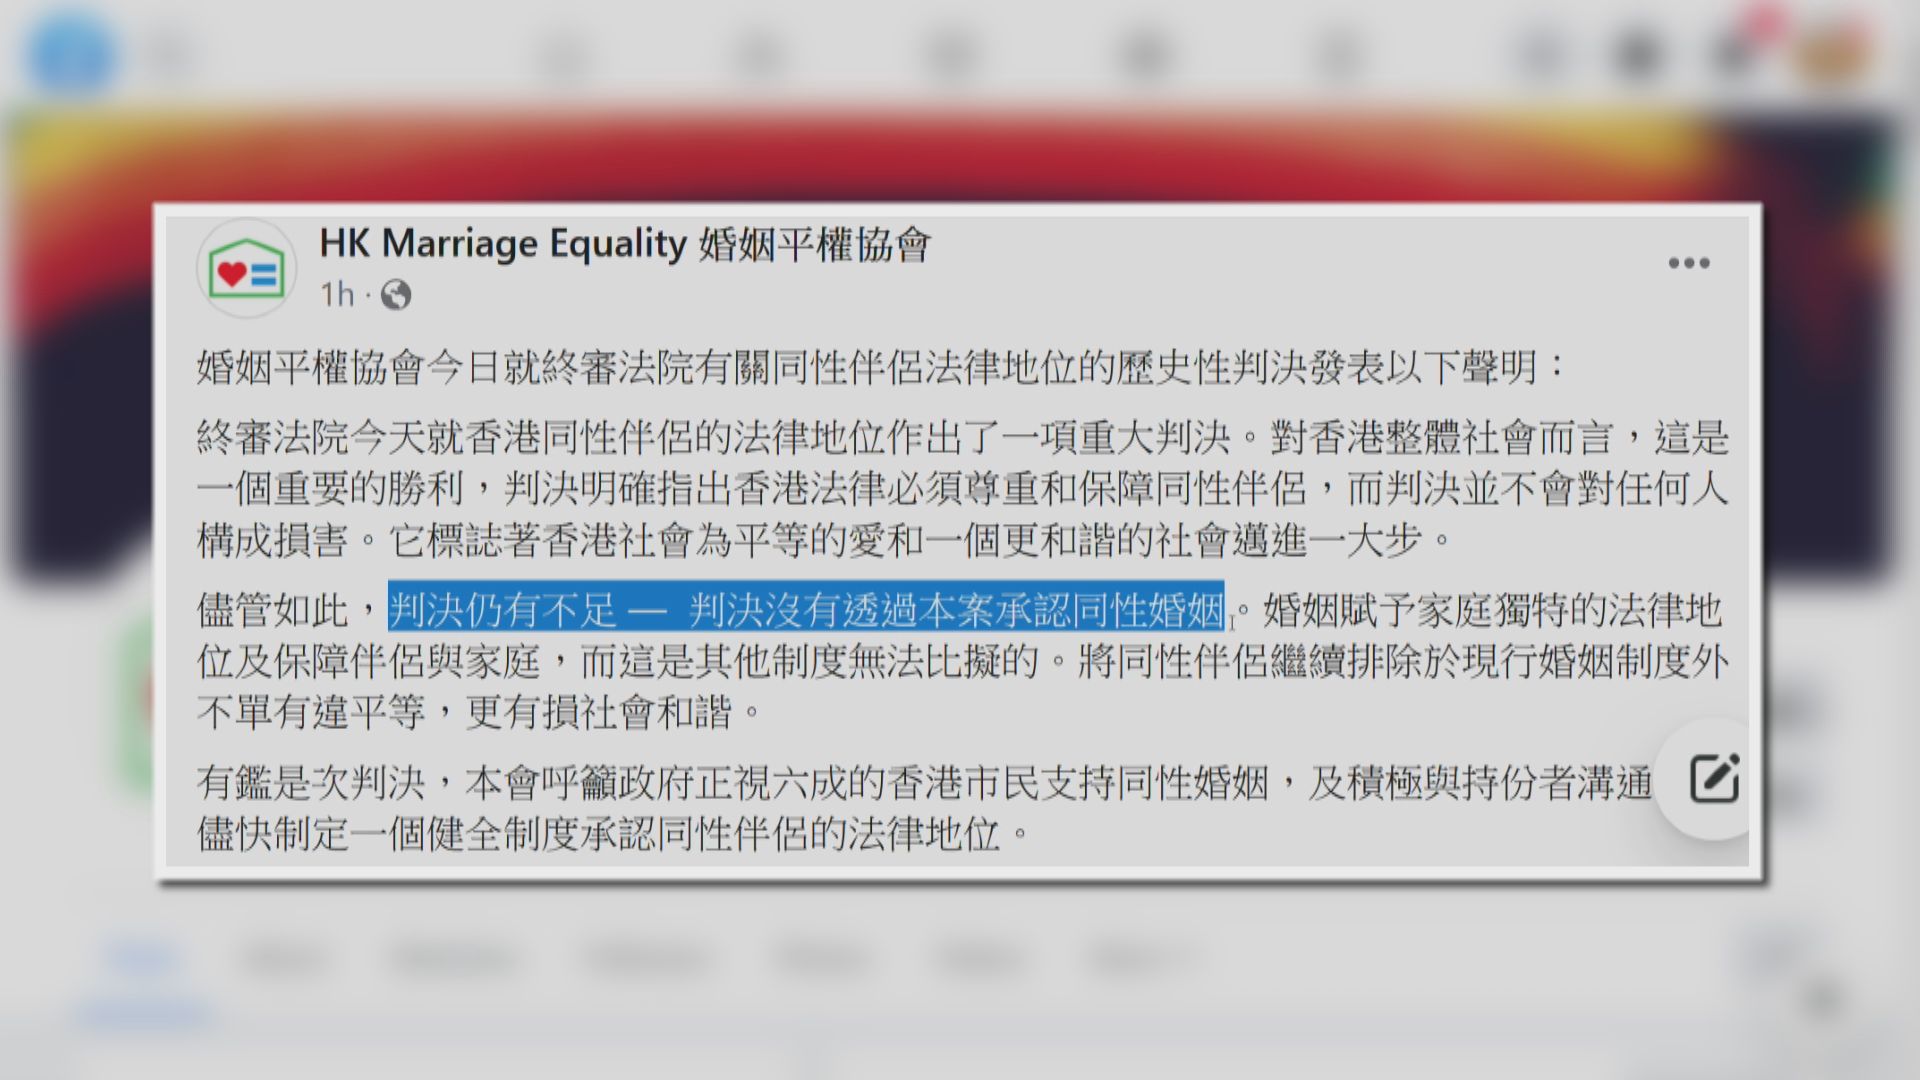 婚姻平權協會籲政府盡快承認同性伴侶法律地位